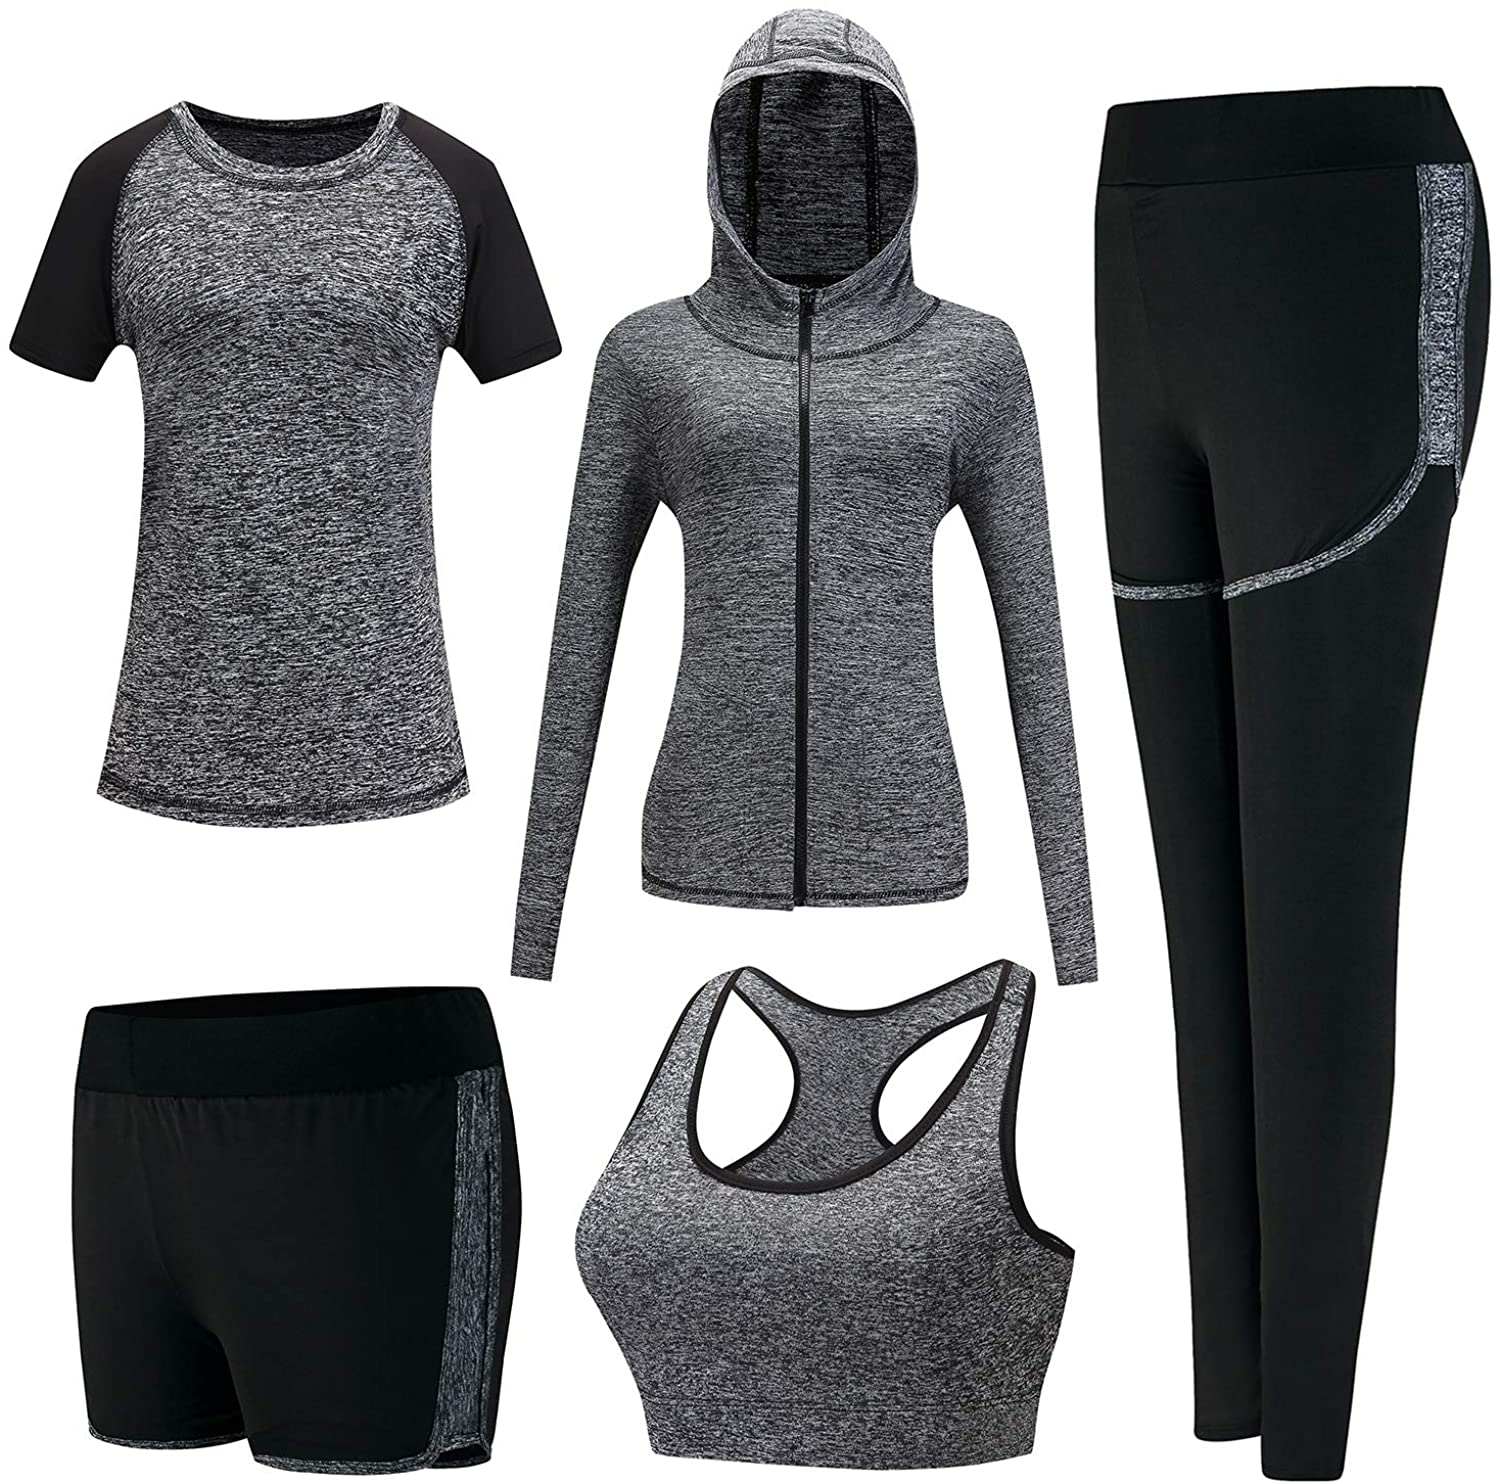  XPINYT Workout Sets for Women Clothes Tracksuit Sport